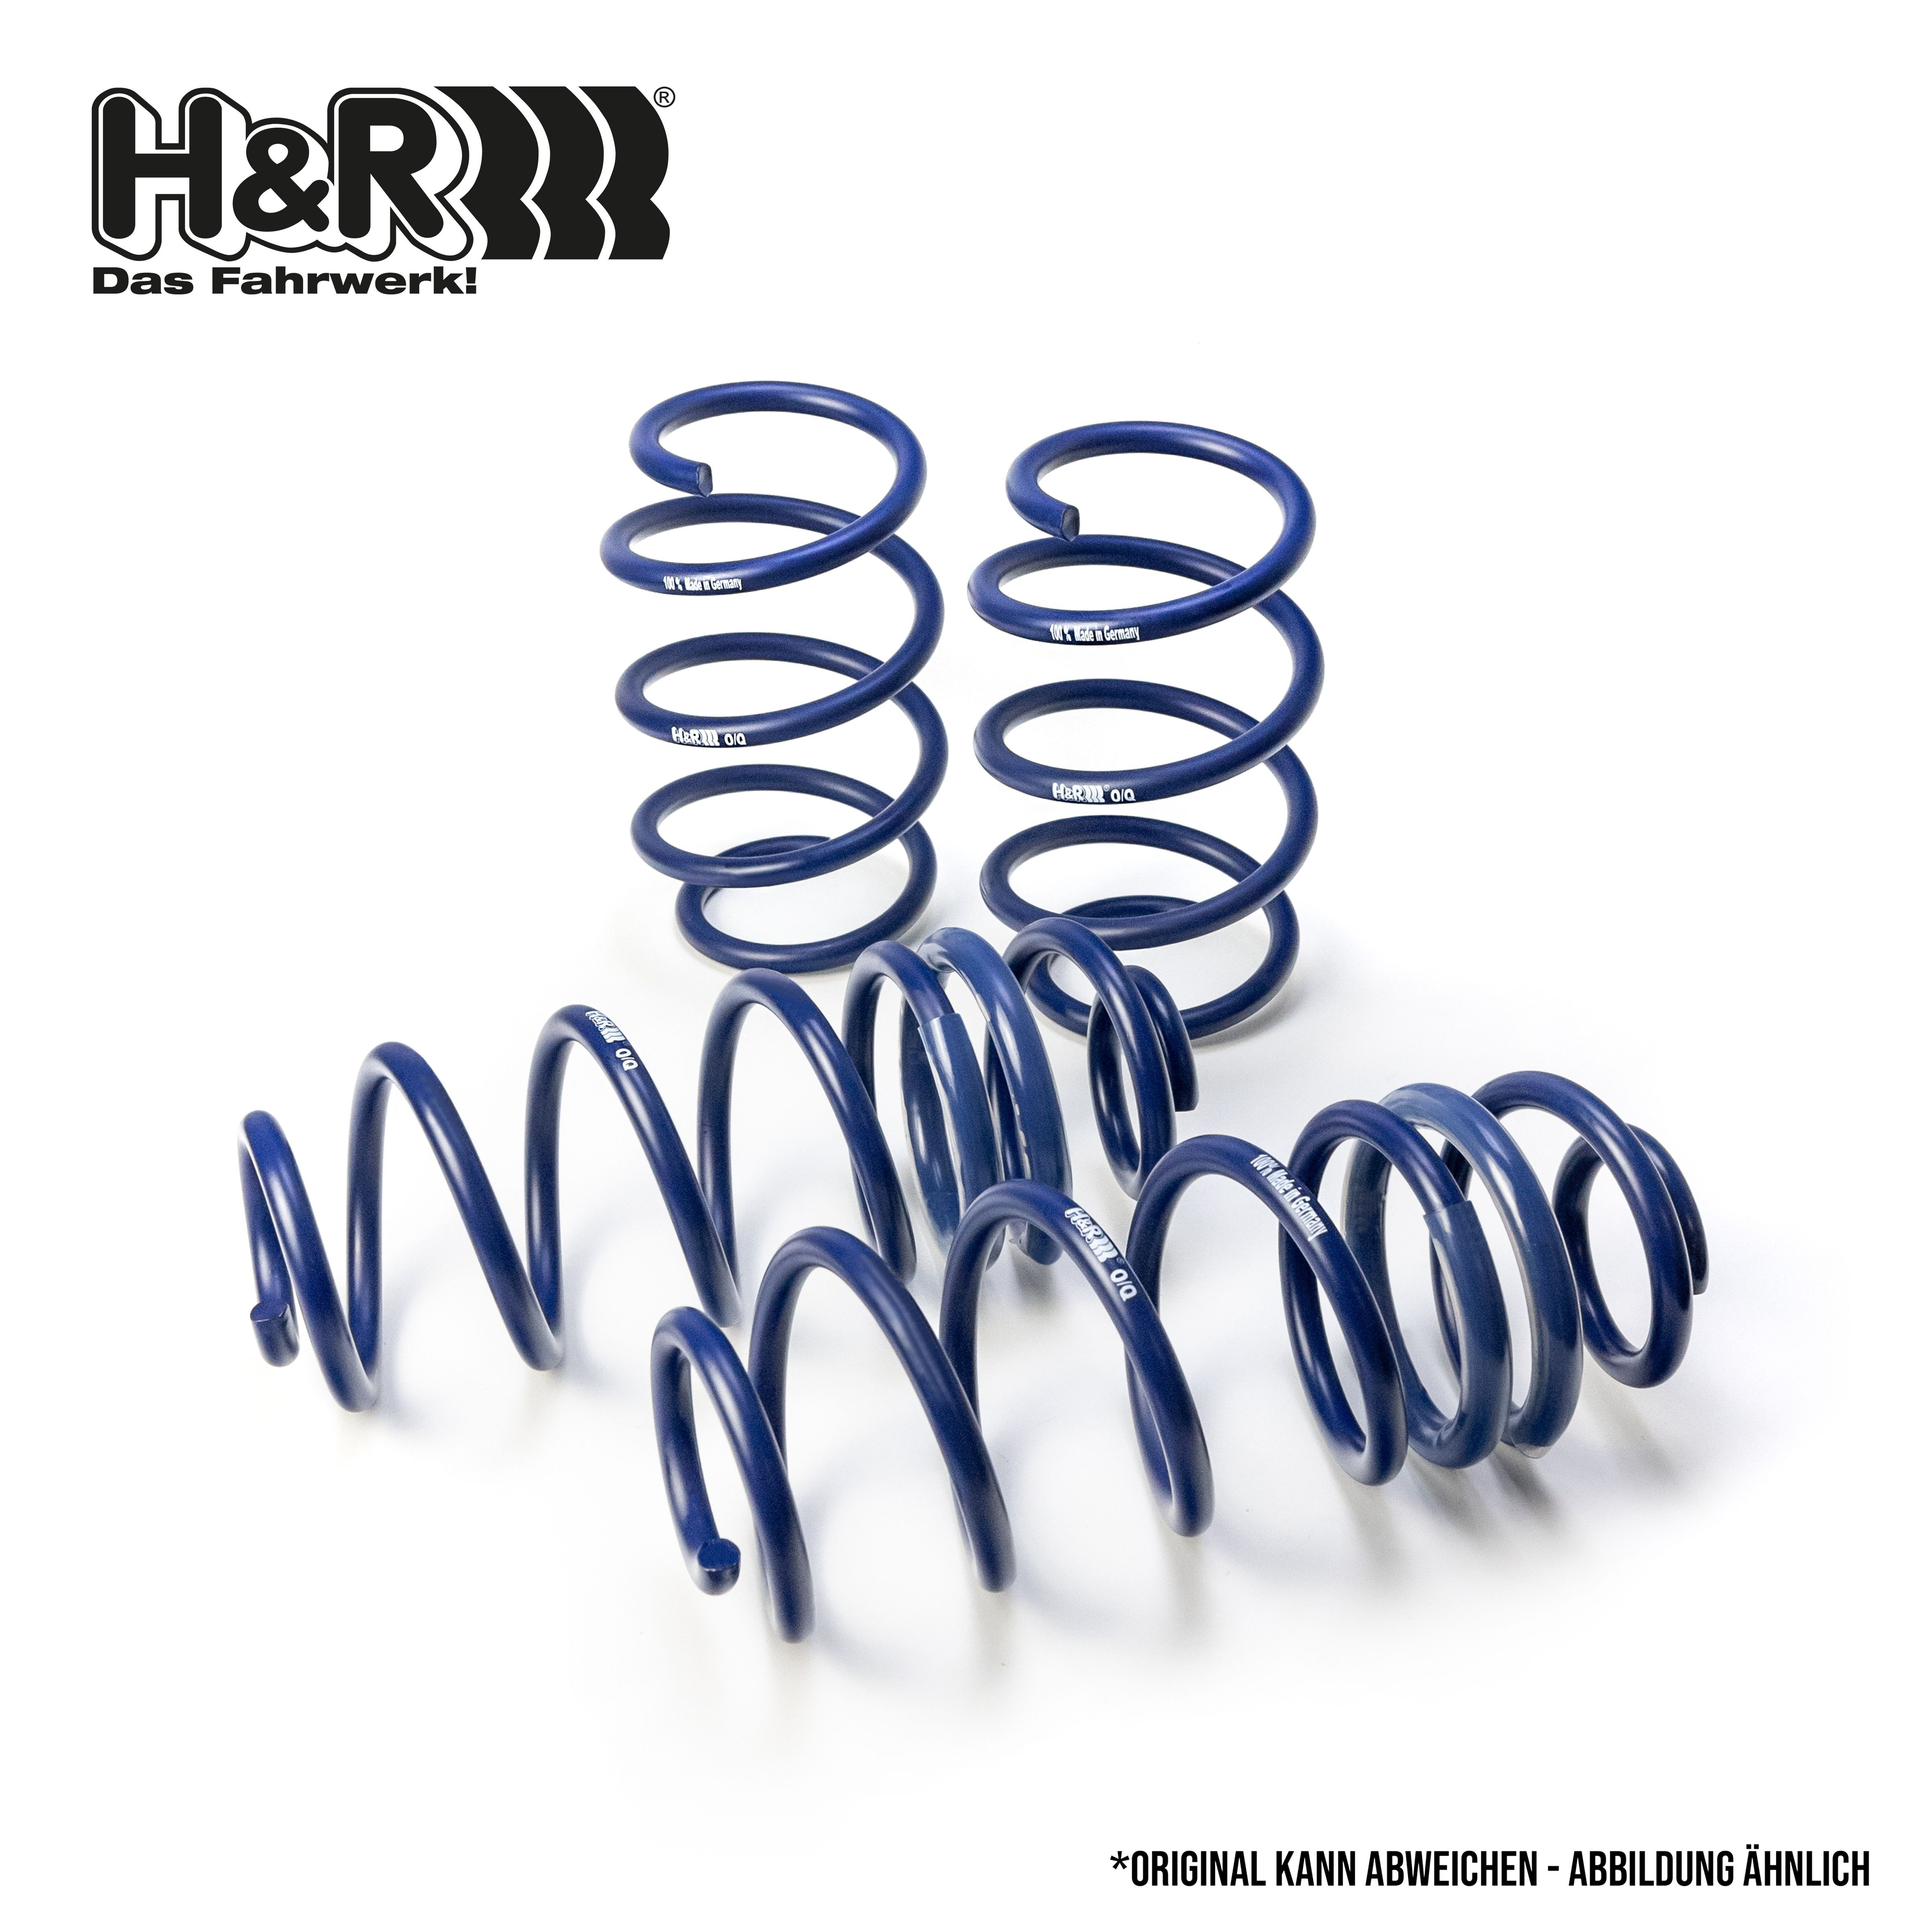 H&R Coil spring kit 29526-1 buy online